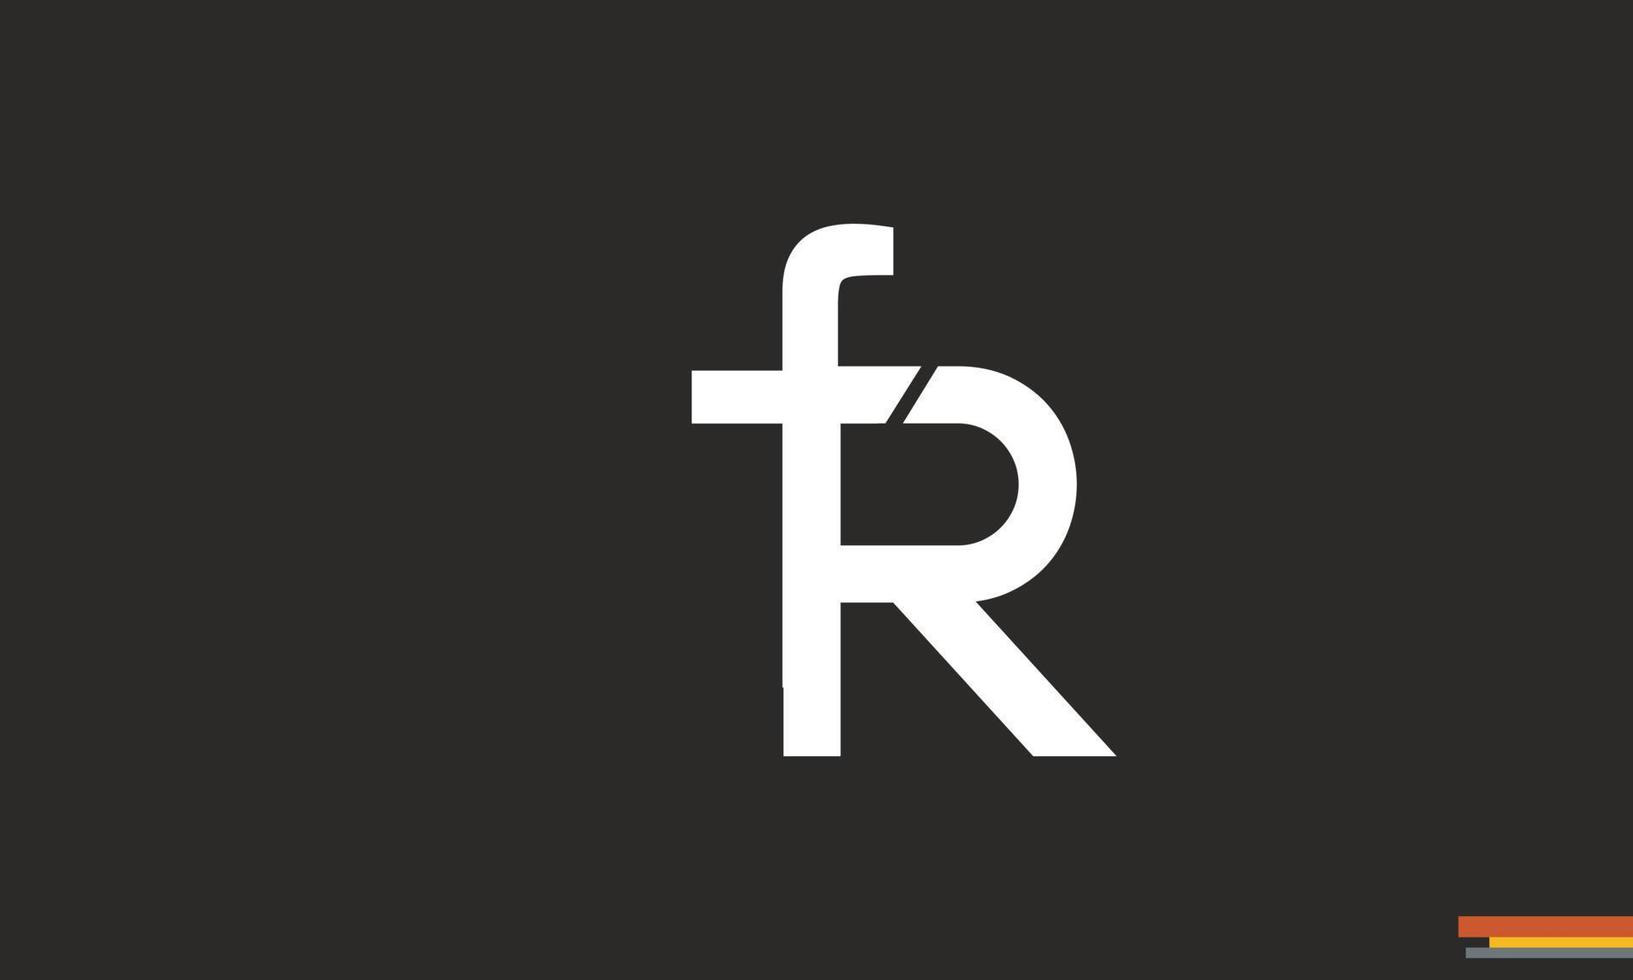 alphabet buchstaben initialen monogramm logo fr, rf, f und r vektor